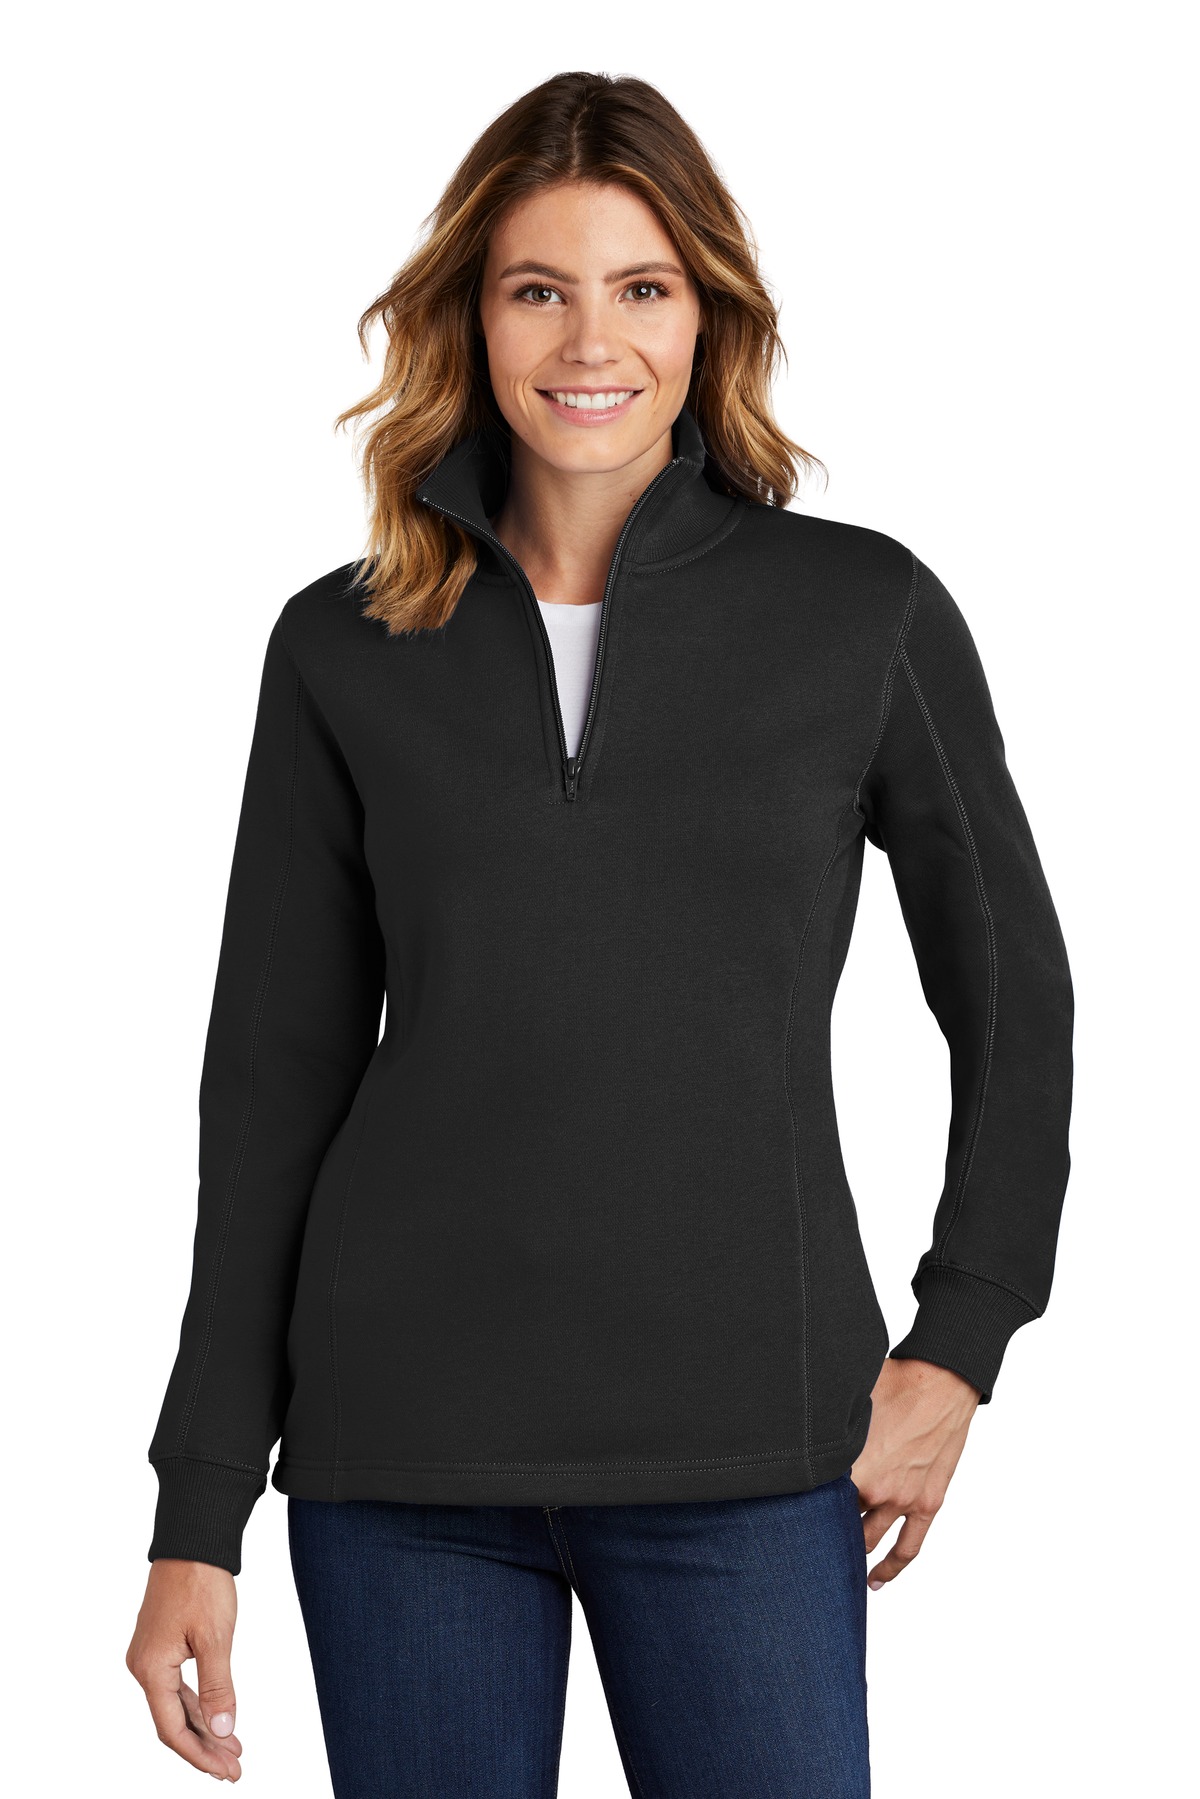 Sport-Tek Ladies Sweatshirts & Fleece for Hospitality ® Ladies 1/4-Zip Sweatshirt.-Sport-Tek